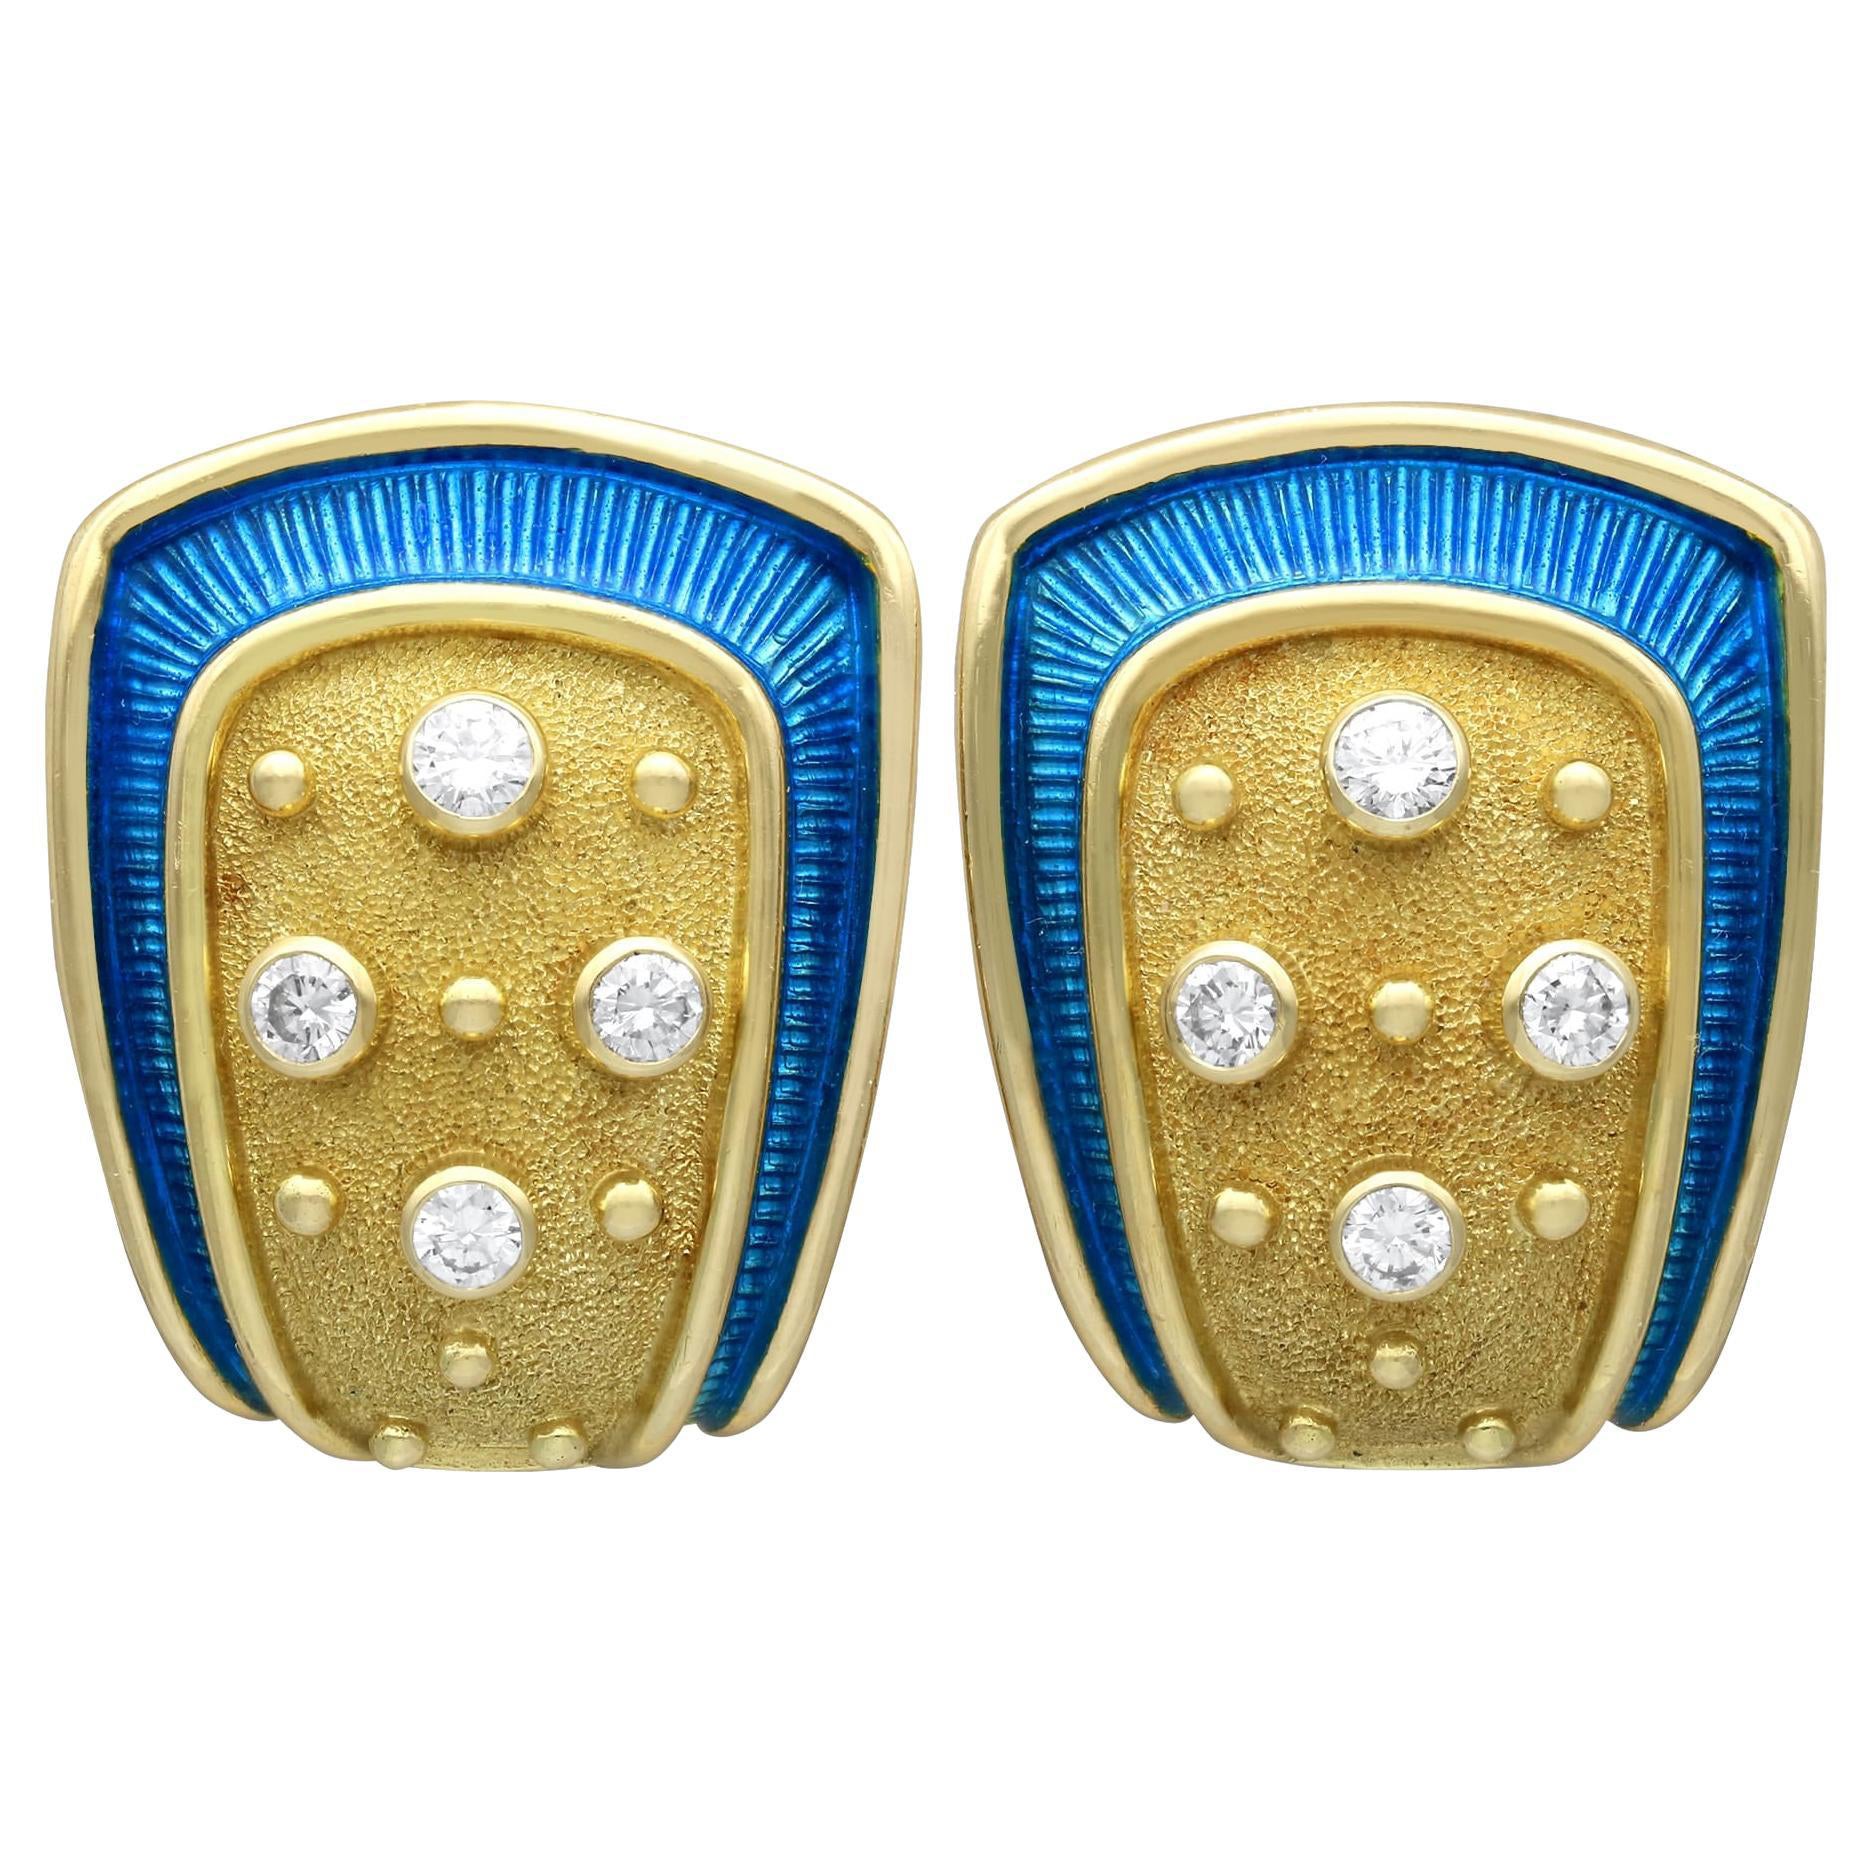 1990s Enamel 0.88 Carat Diamond and 18k Yellow Gold Earrings by De Vroomen